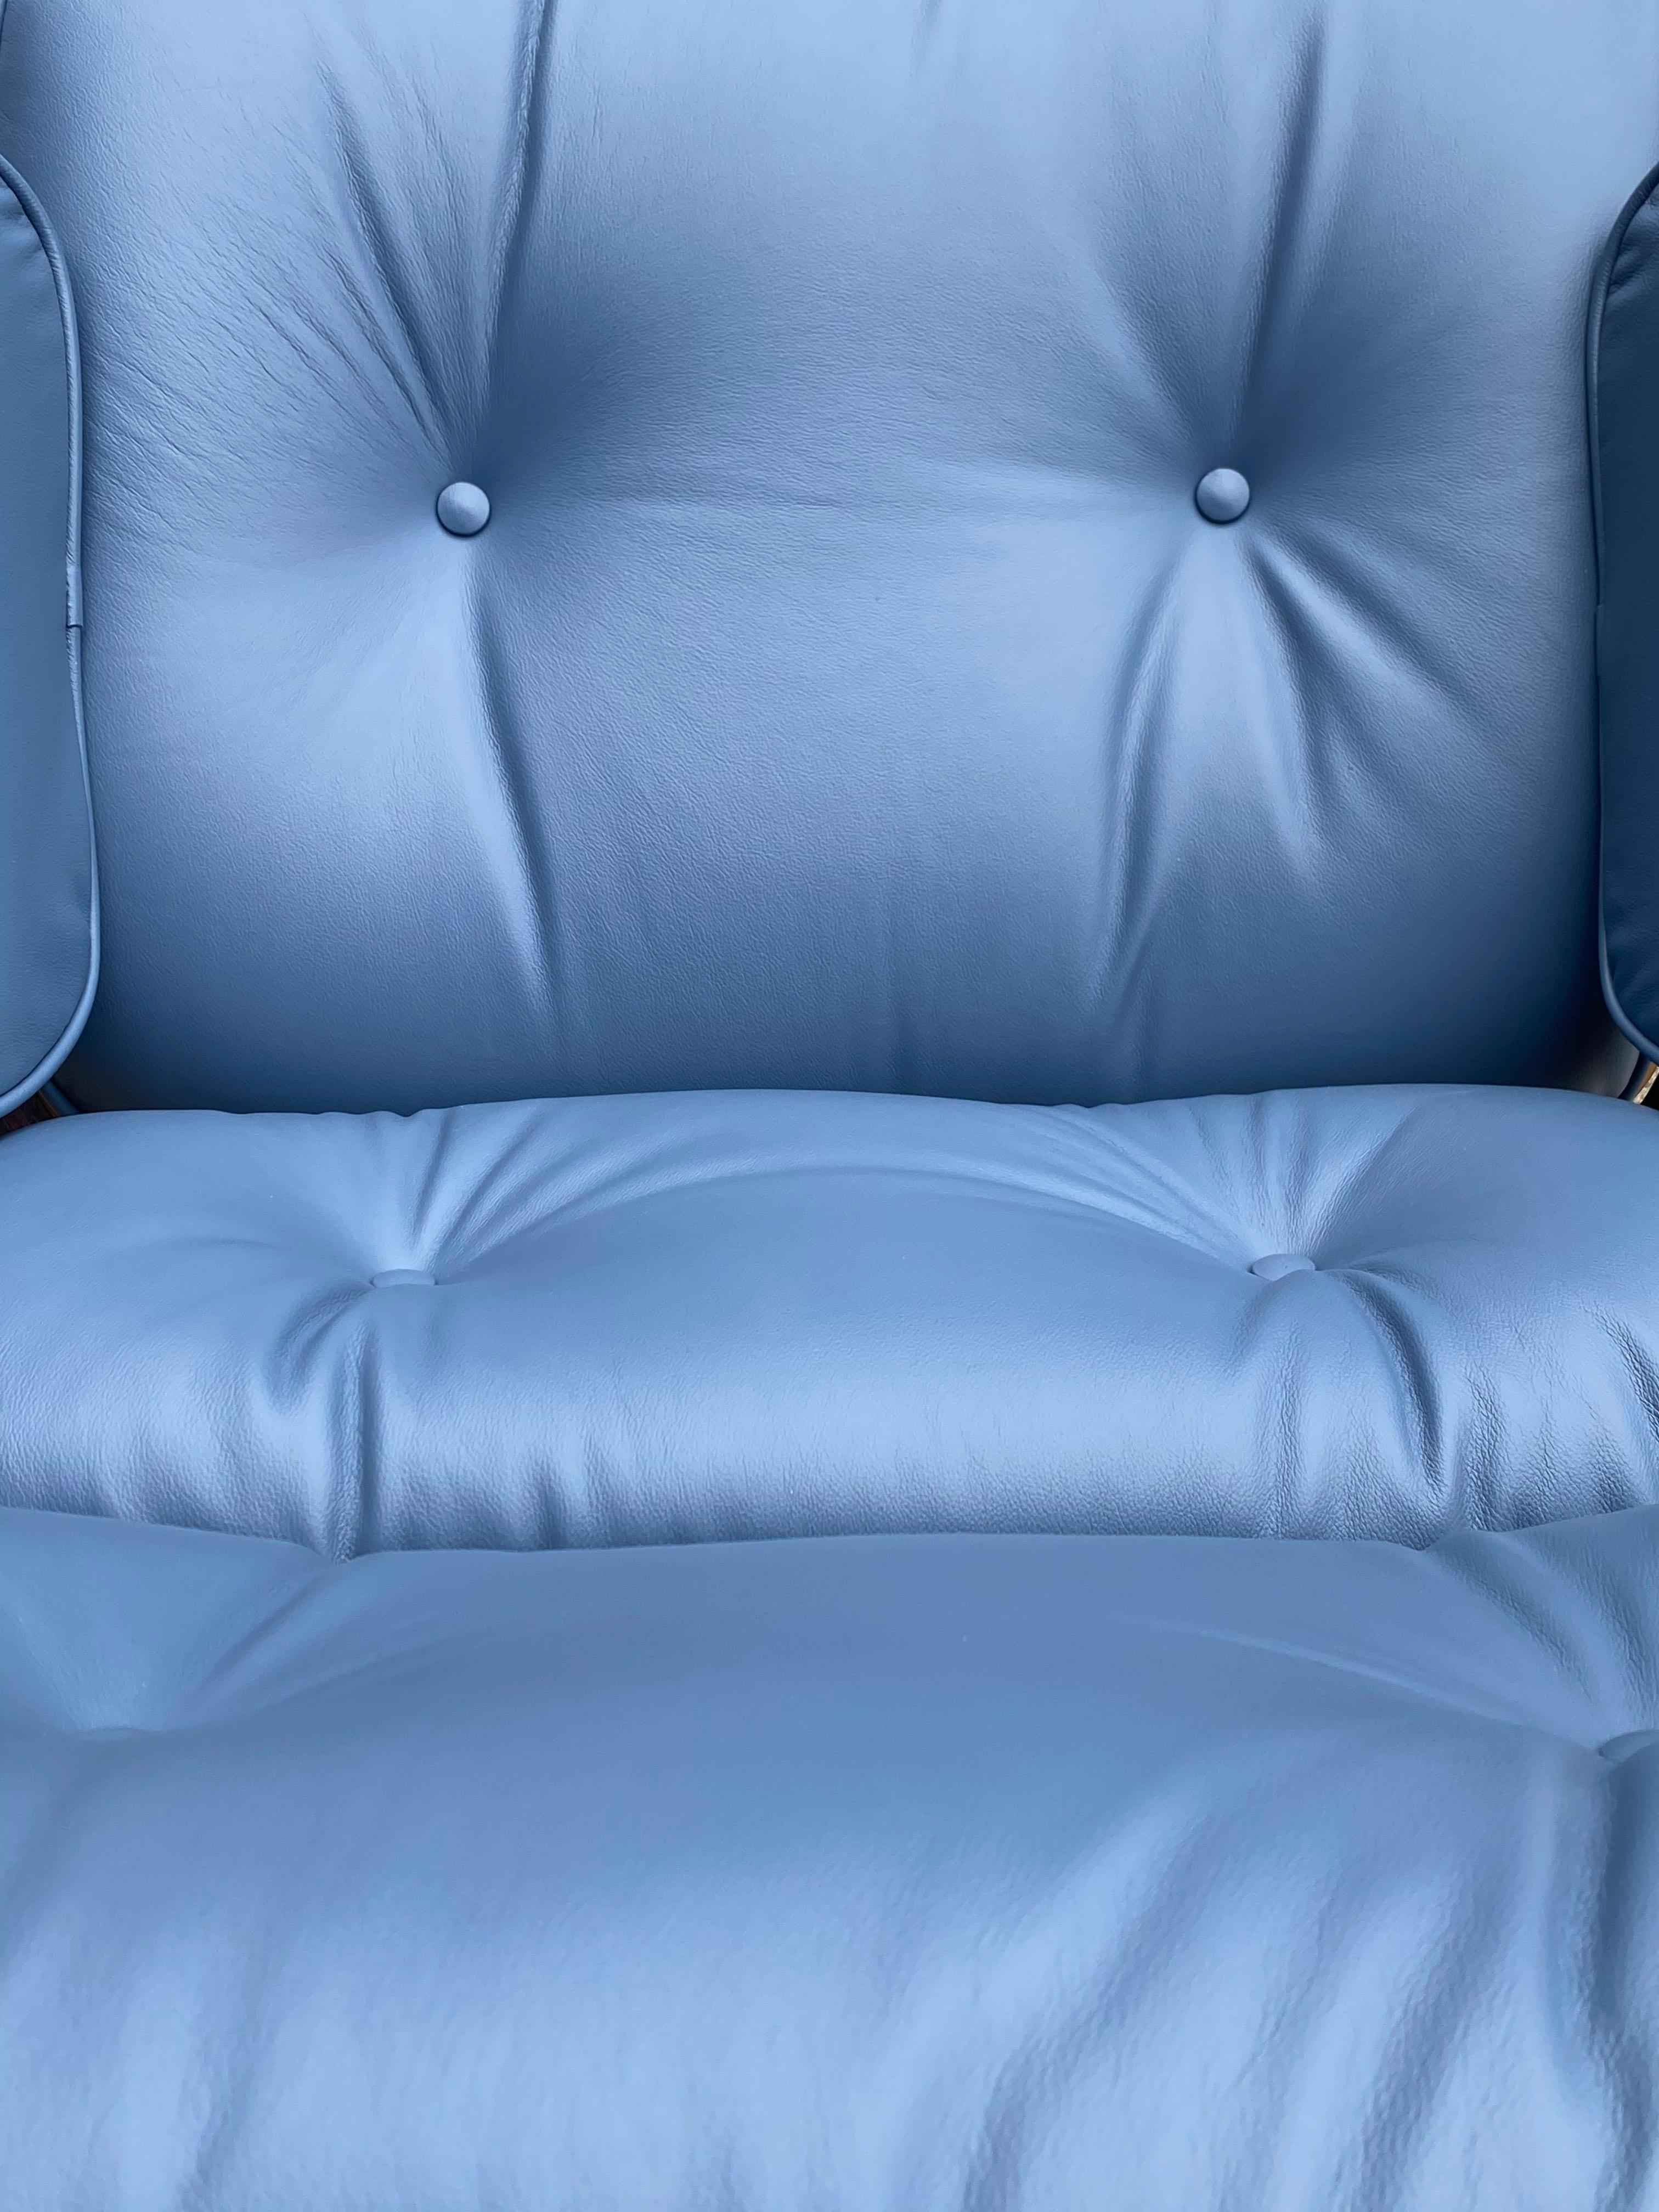 blue eames chair